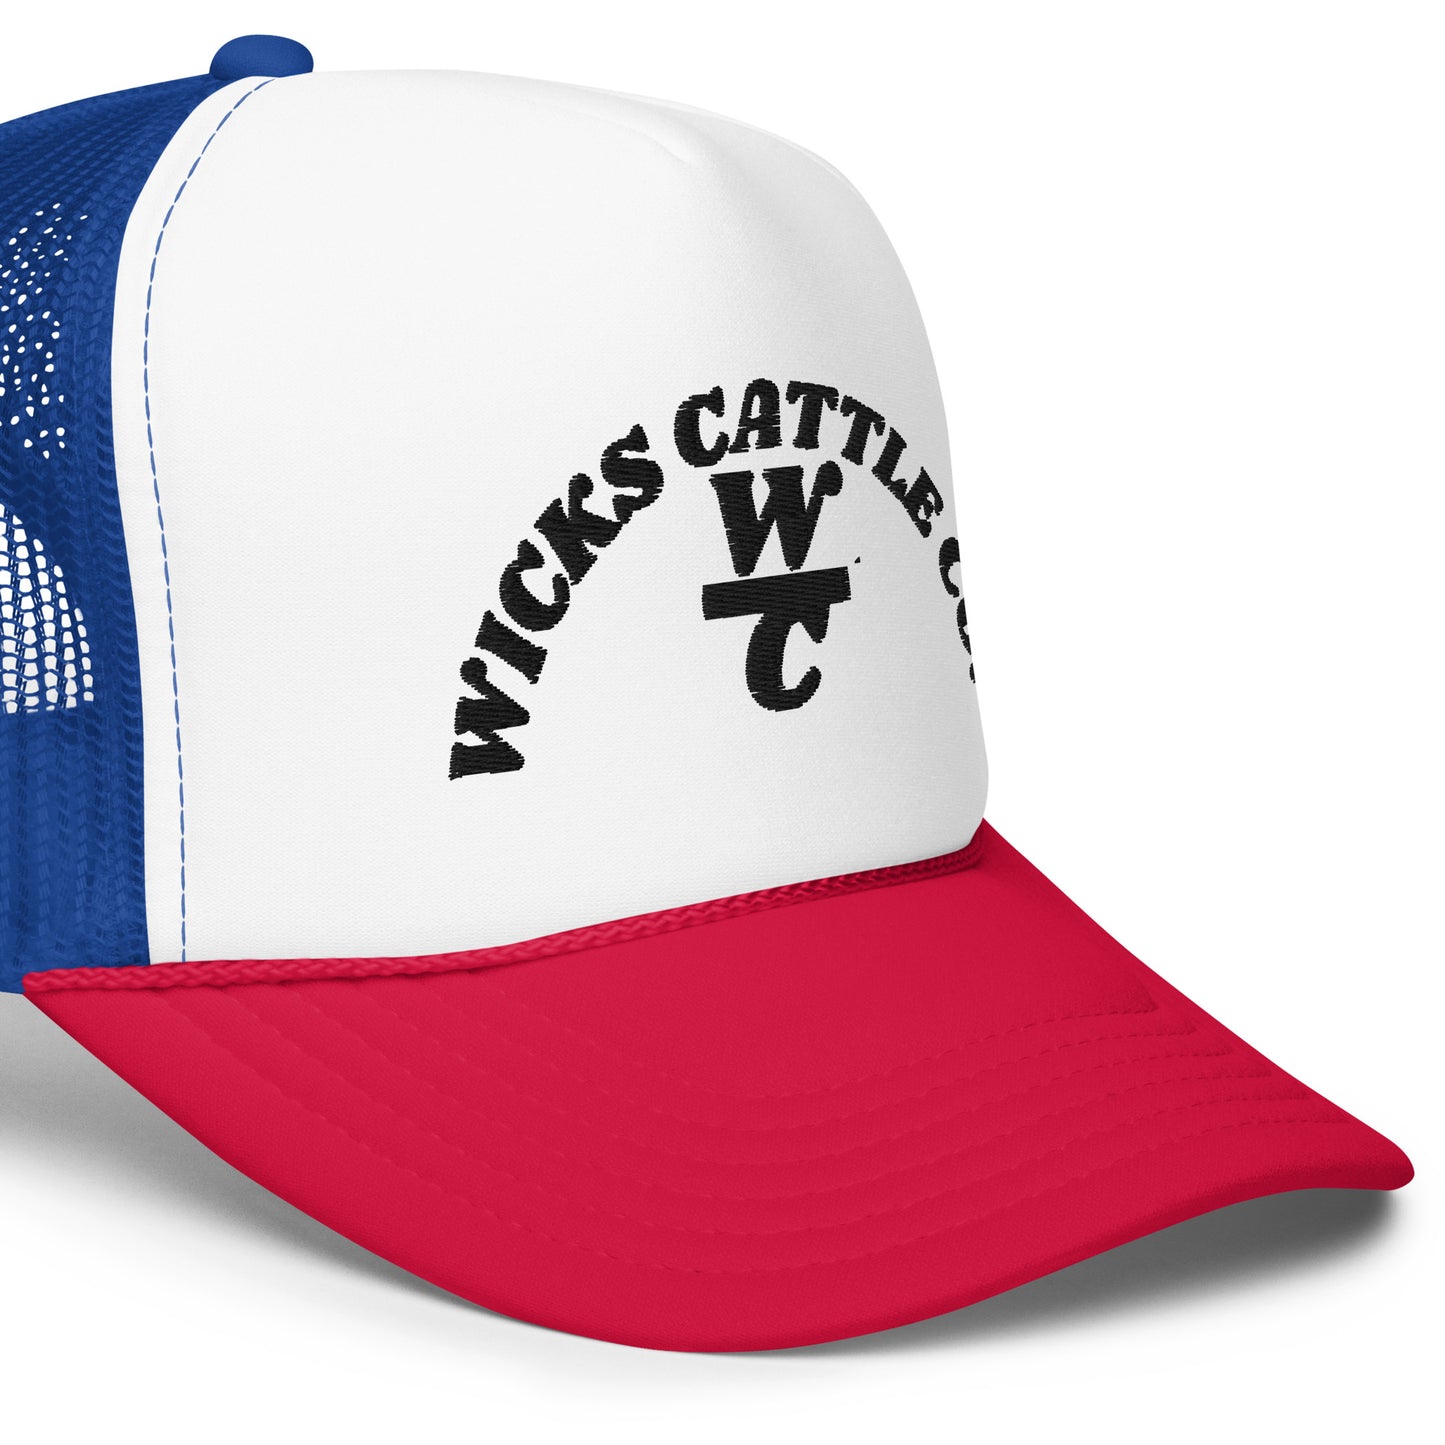 Wicks Cattle Hat